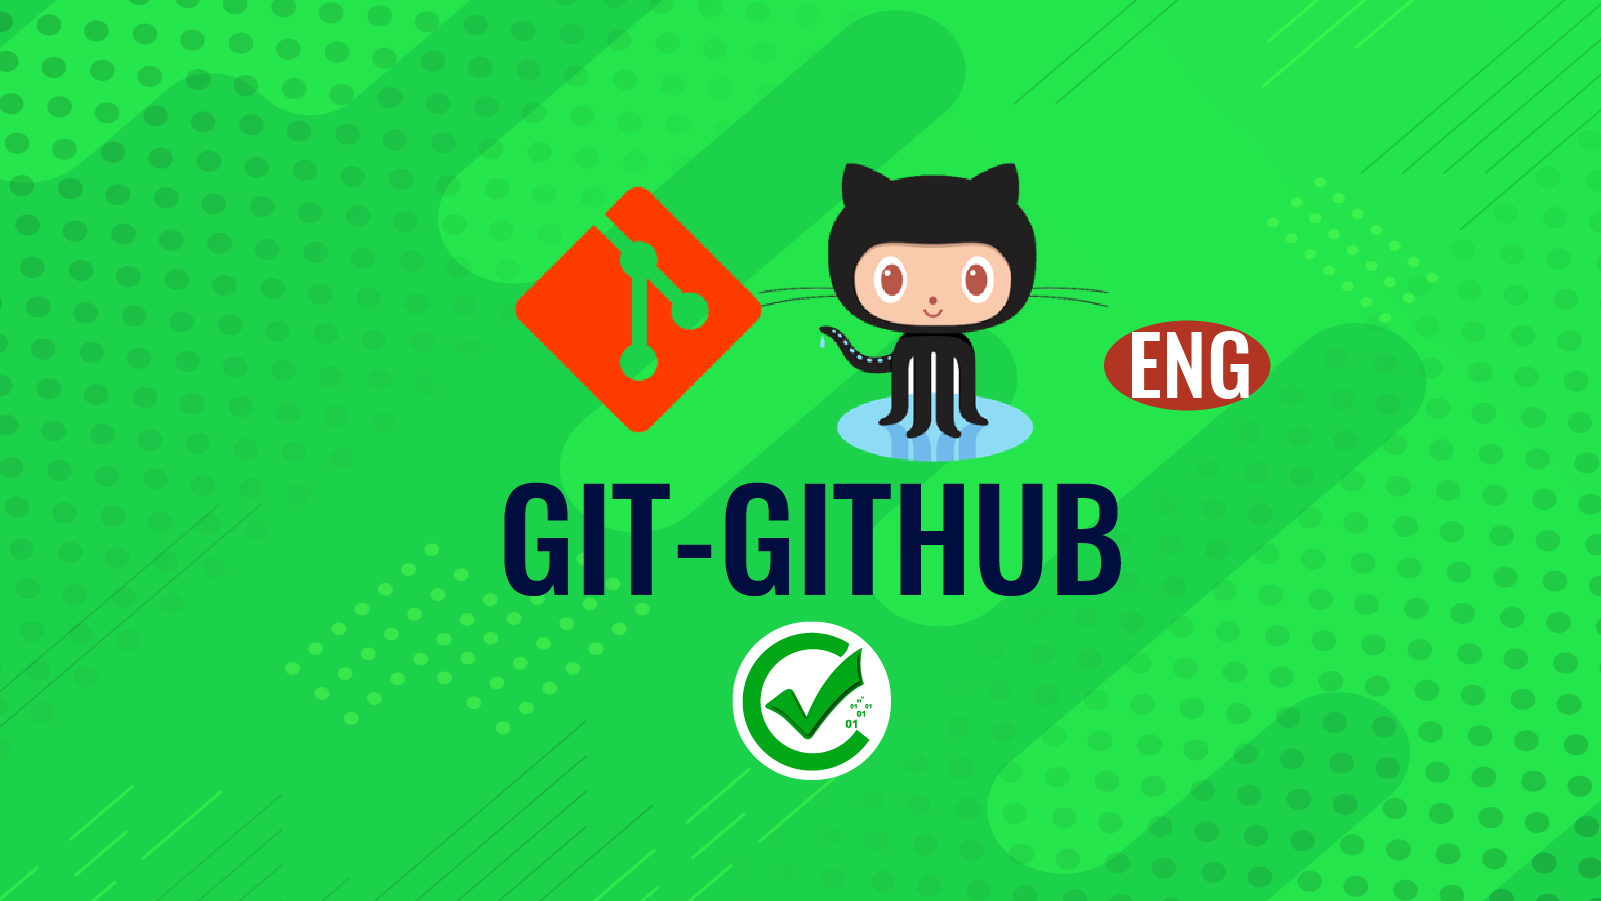 Git-Github 97-98  100-101 119-120